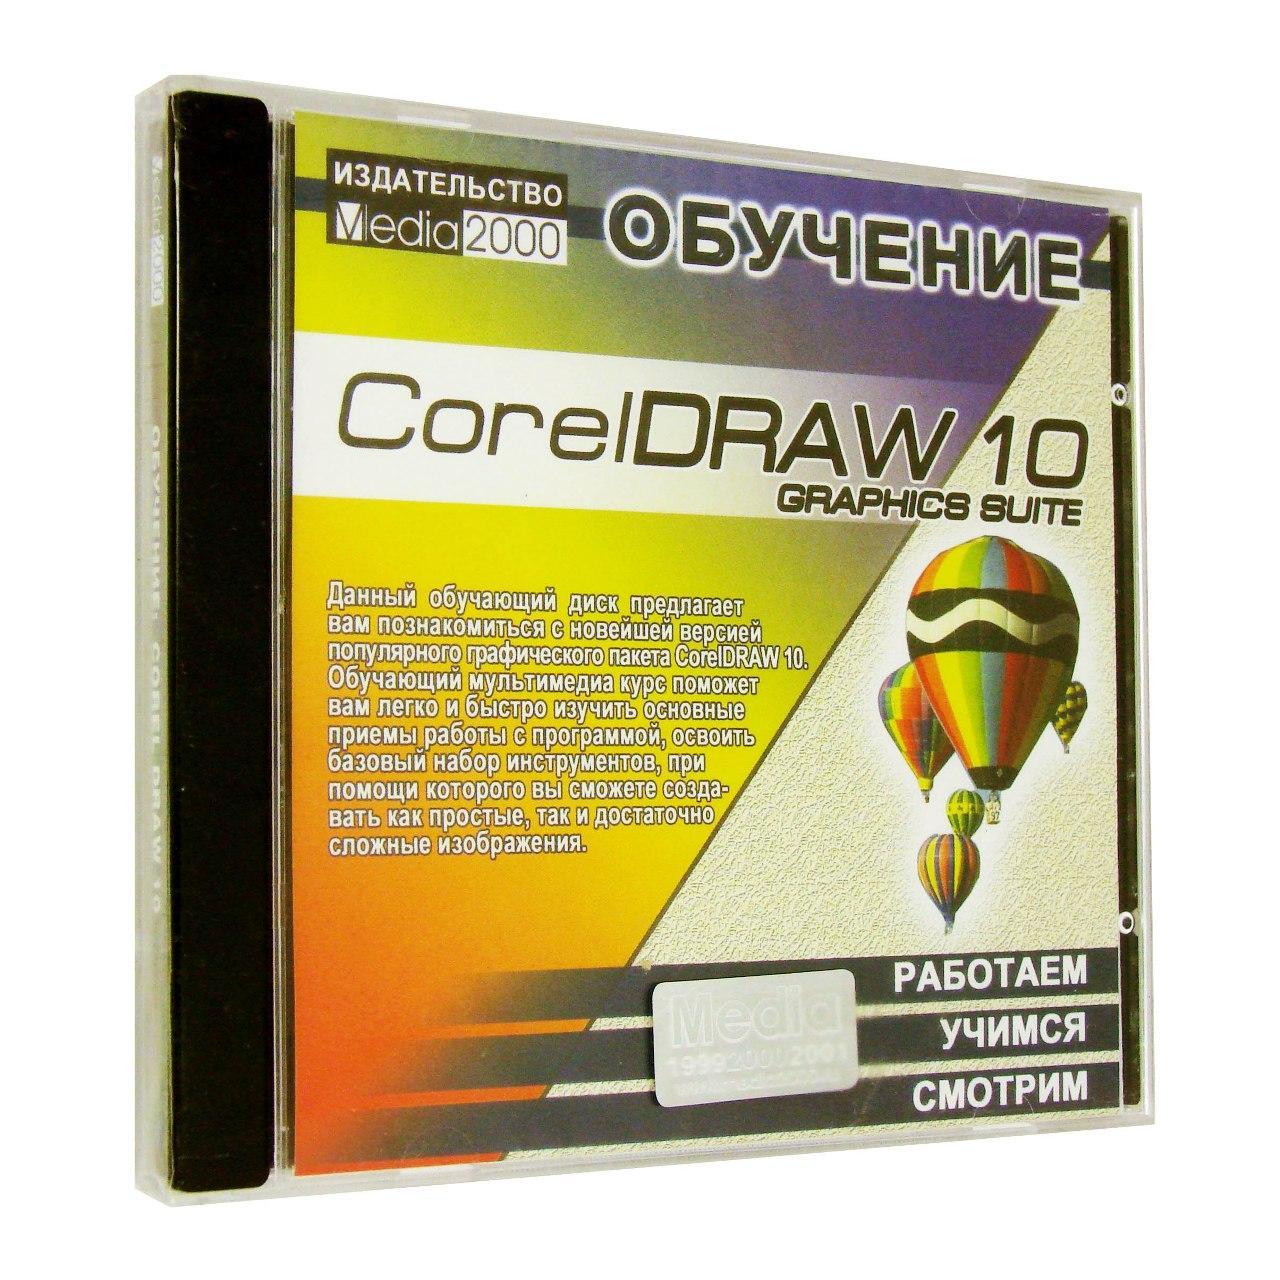 Компьютерный компакт-диск Обучение Corel Draw 10 (PC), фирма "Медиа 2000", 1CD